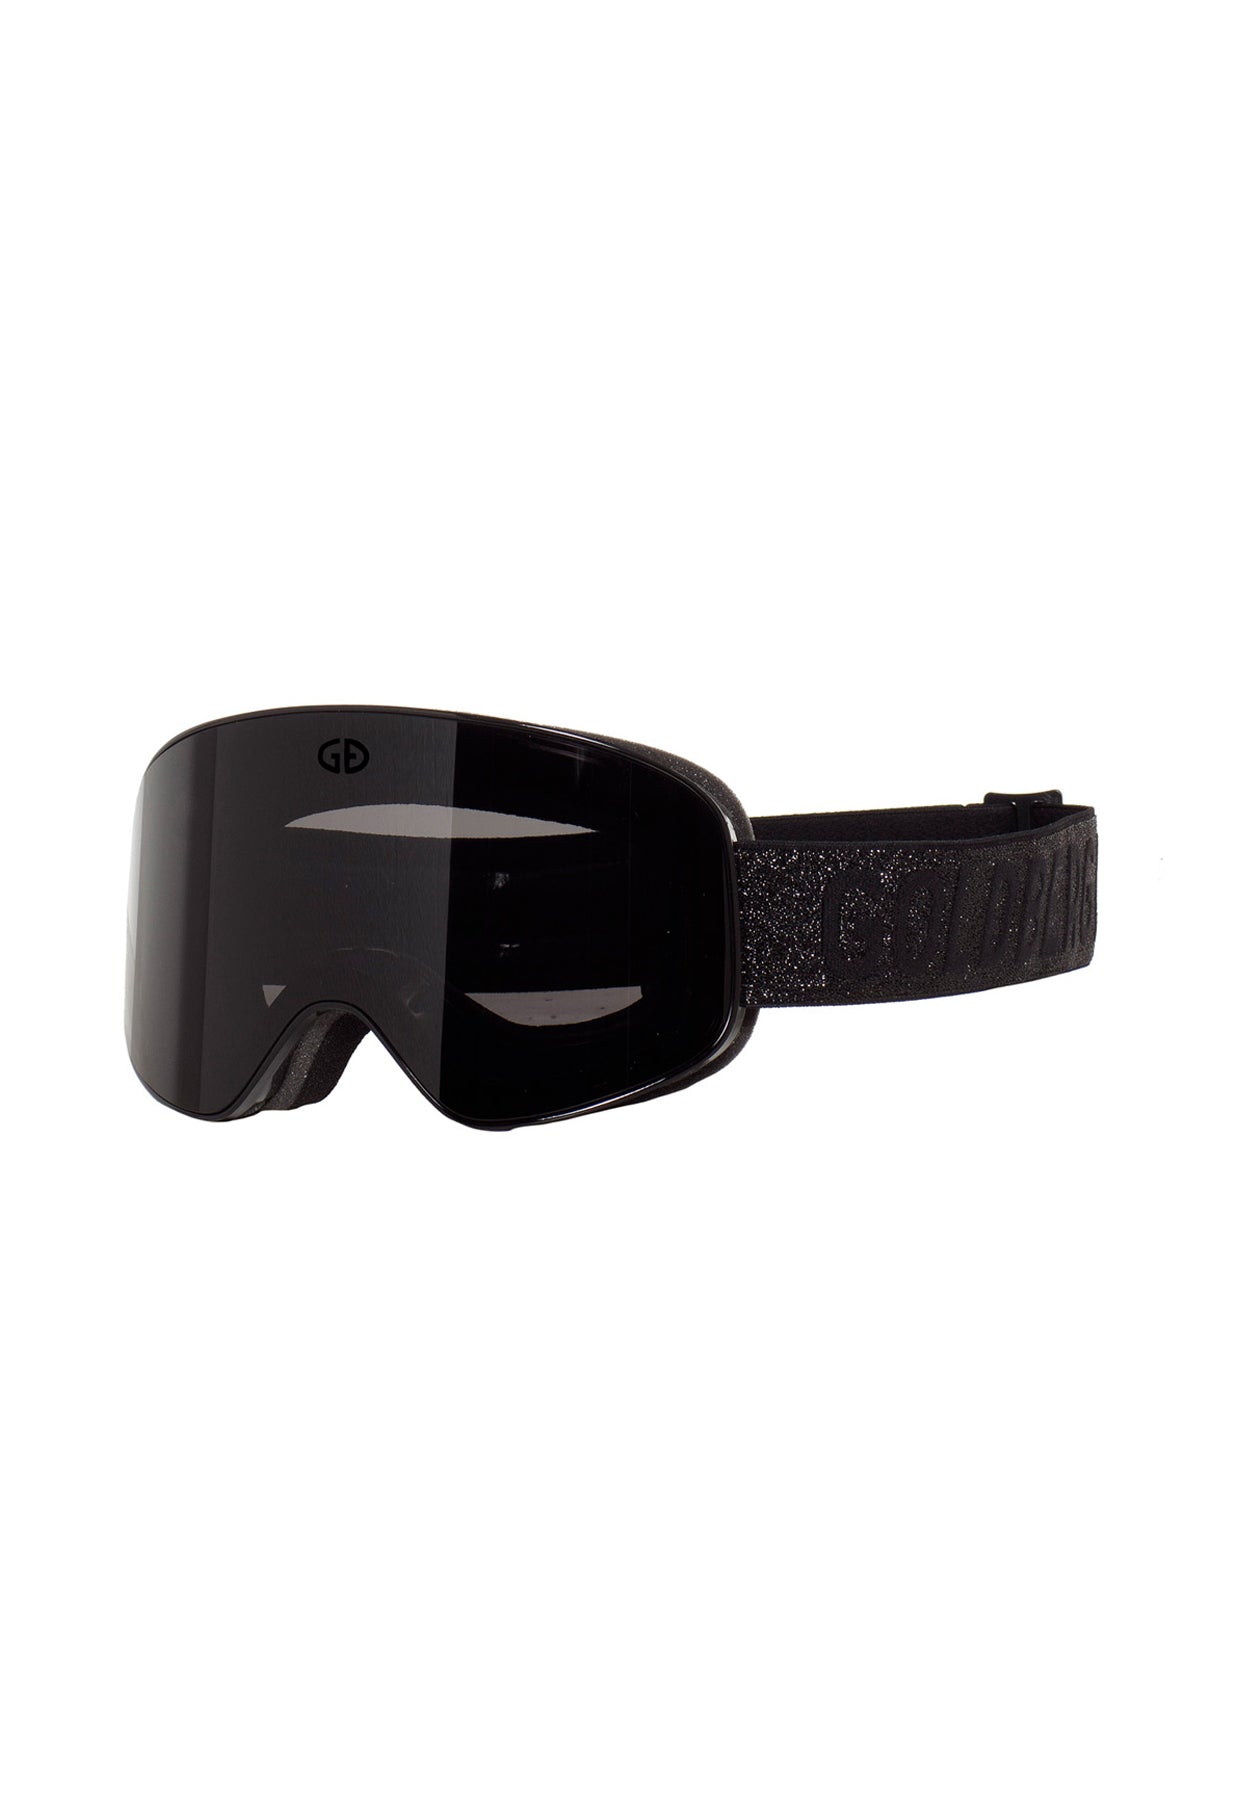 Goldbergh Headturner Ski Goggle in Black